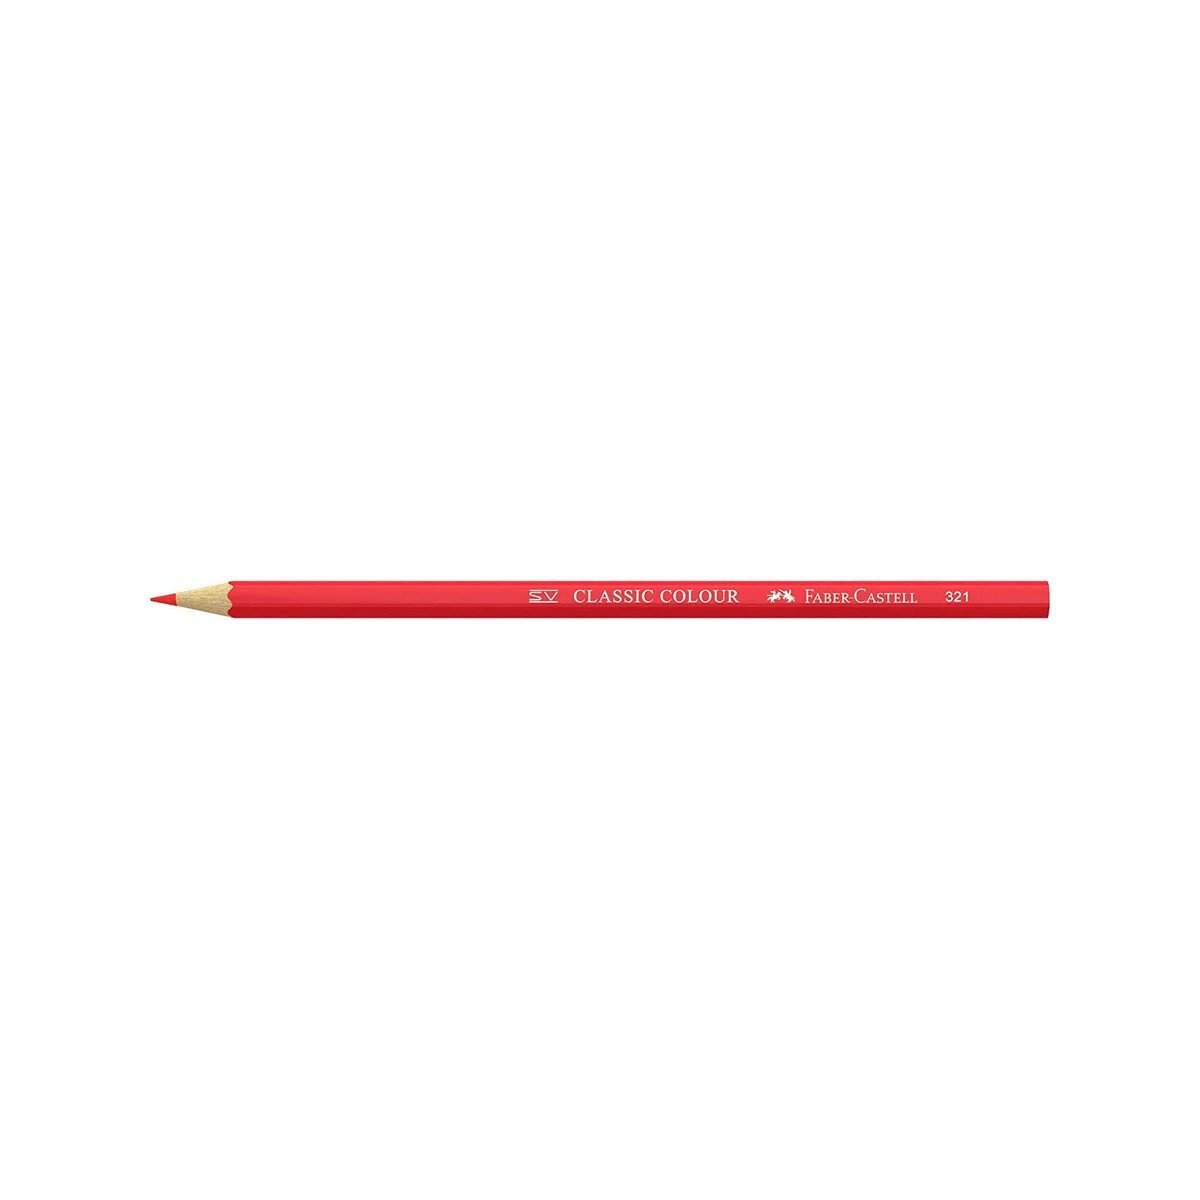 Faber- Castell Color Pencil 115828 36's